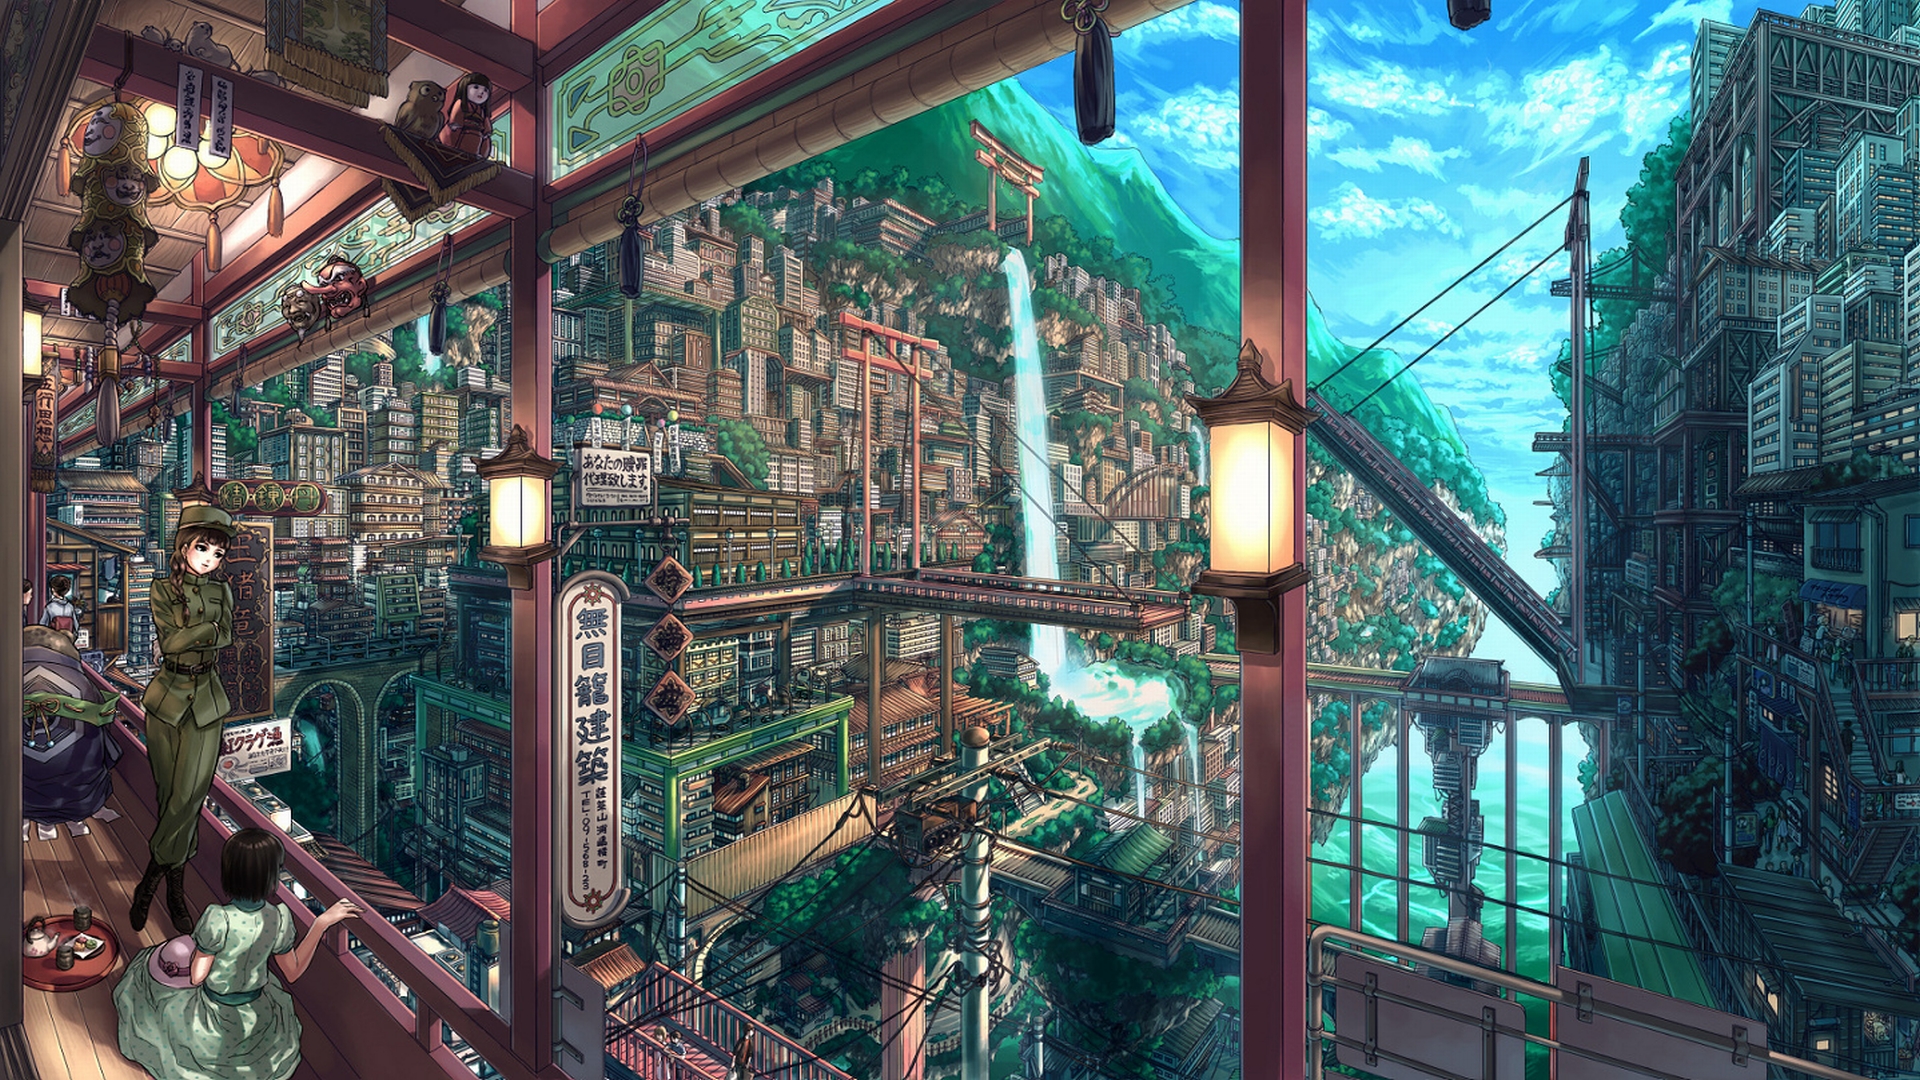 Anime Fan Art wallpapers HD for desktop backgrounds